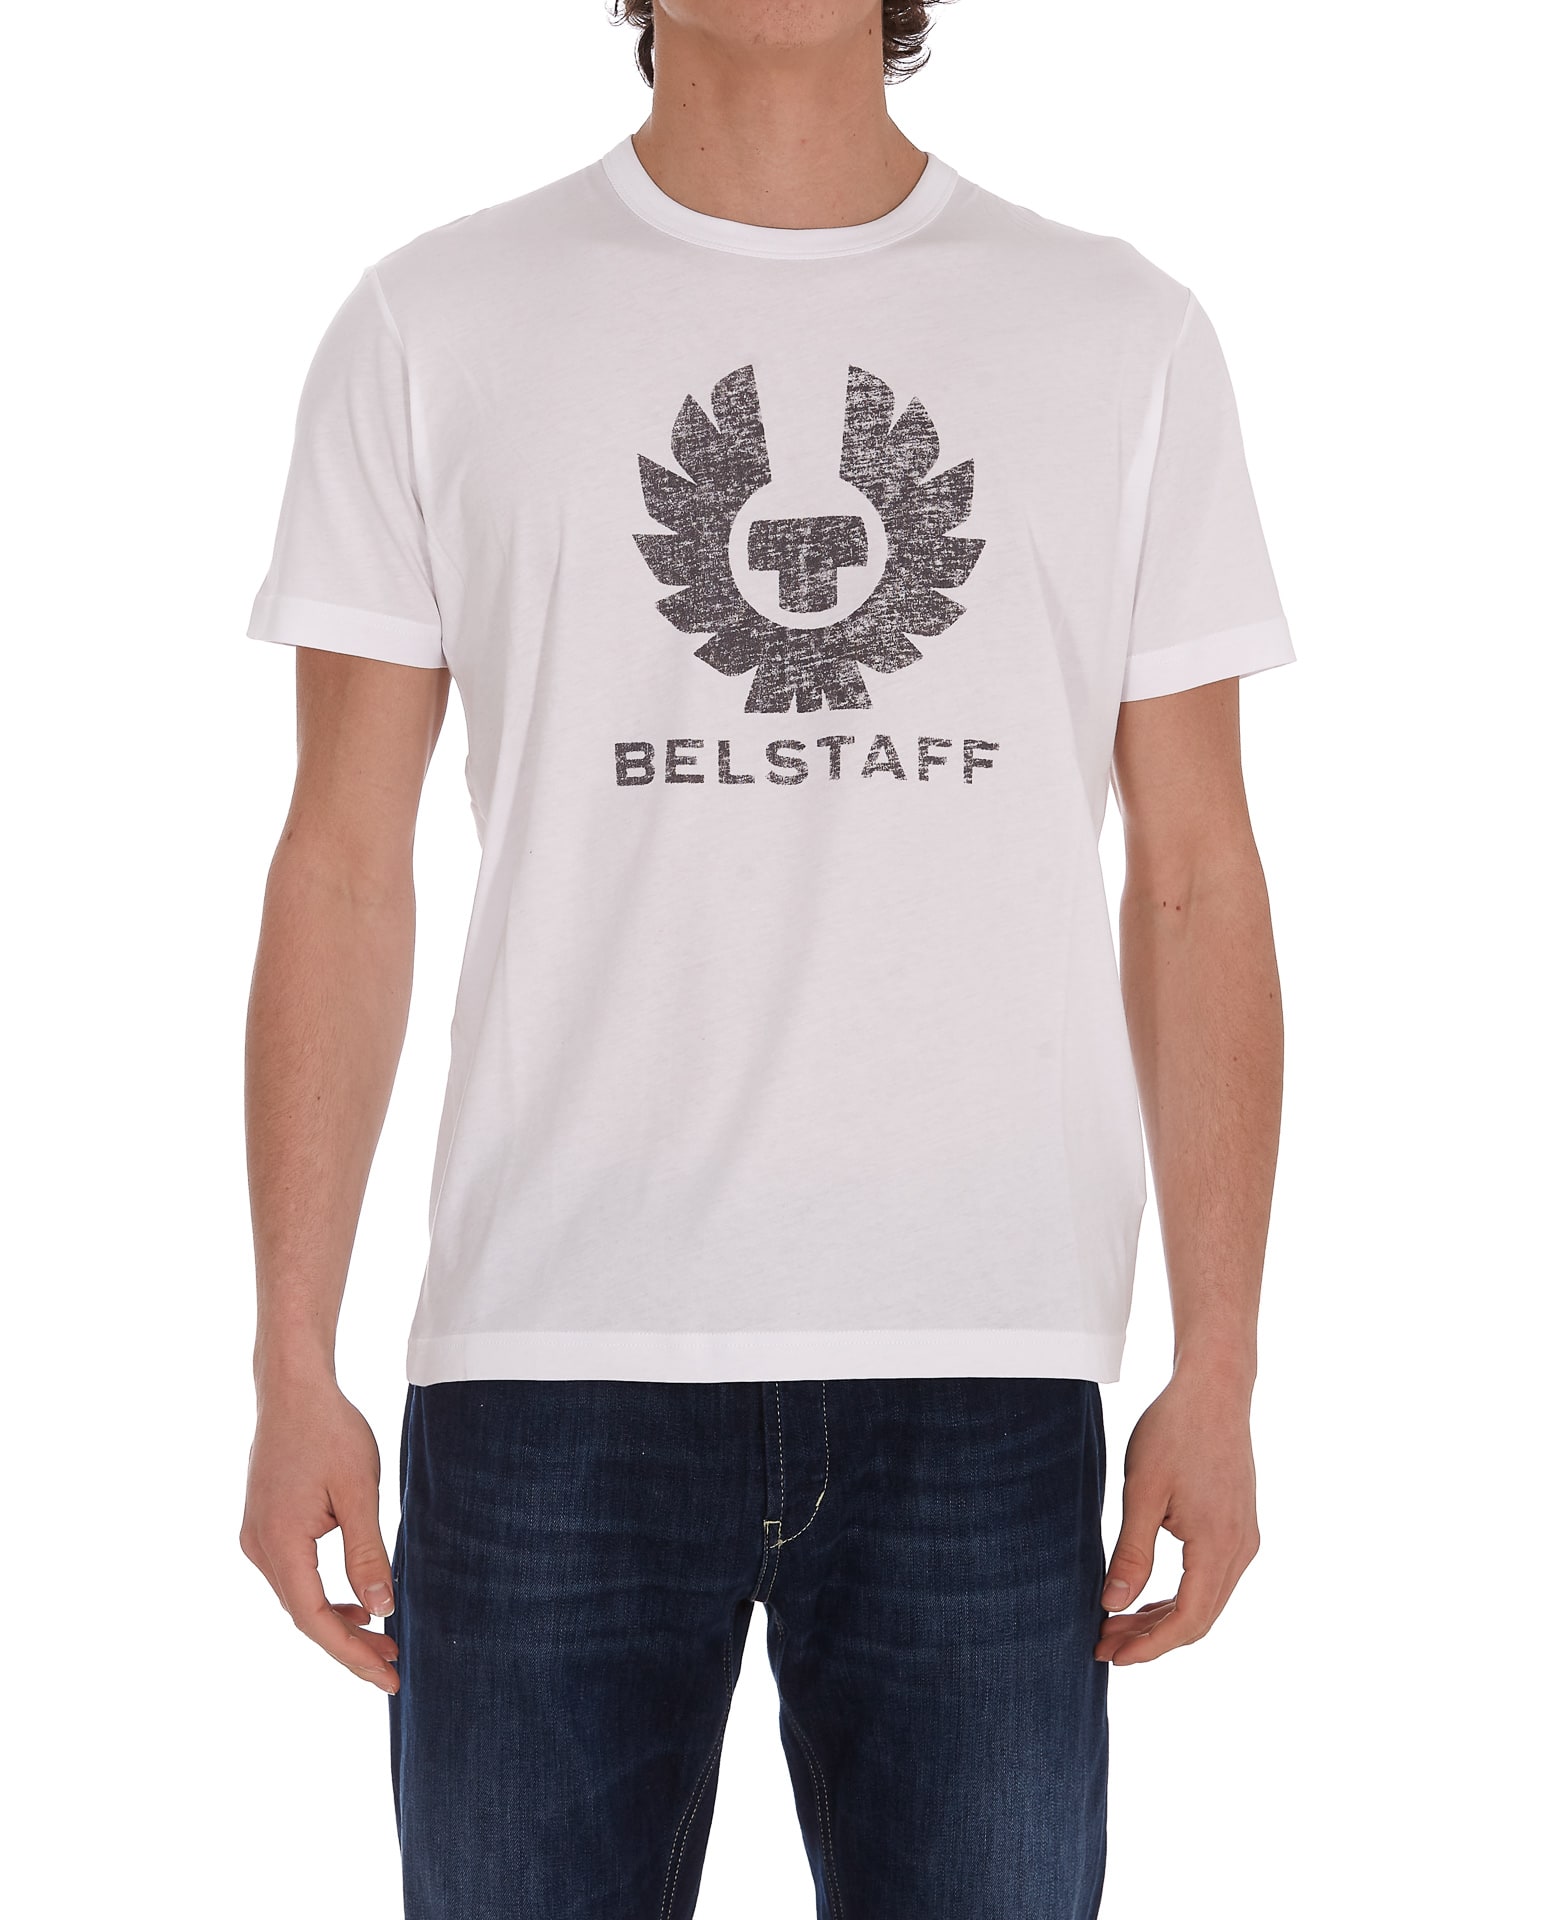 BELSTAFF LOGO T-SHIRT,71140318 J61N010310000